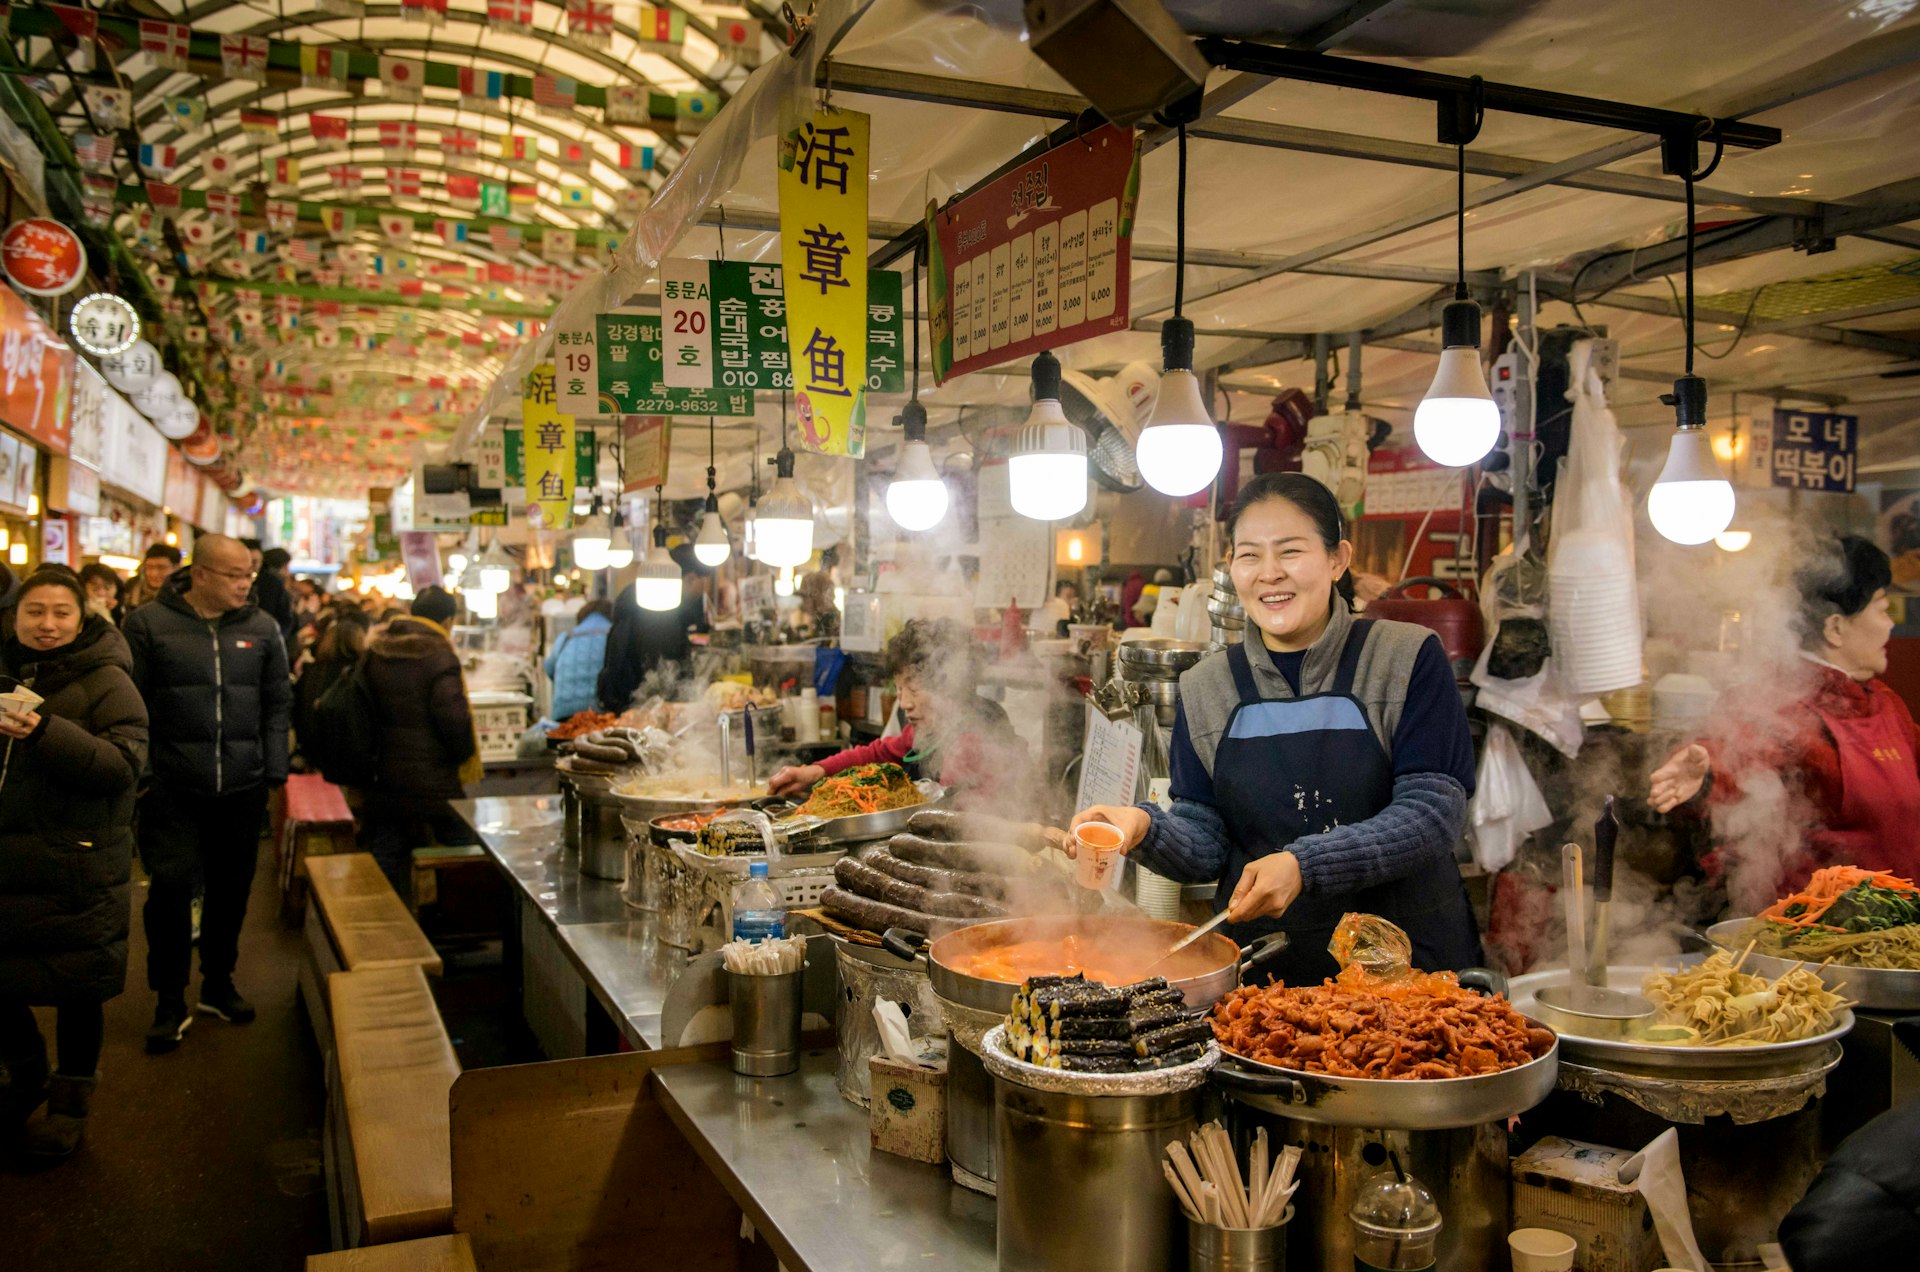 A food vendor at a market in Seoul